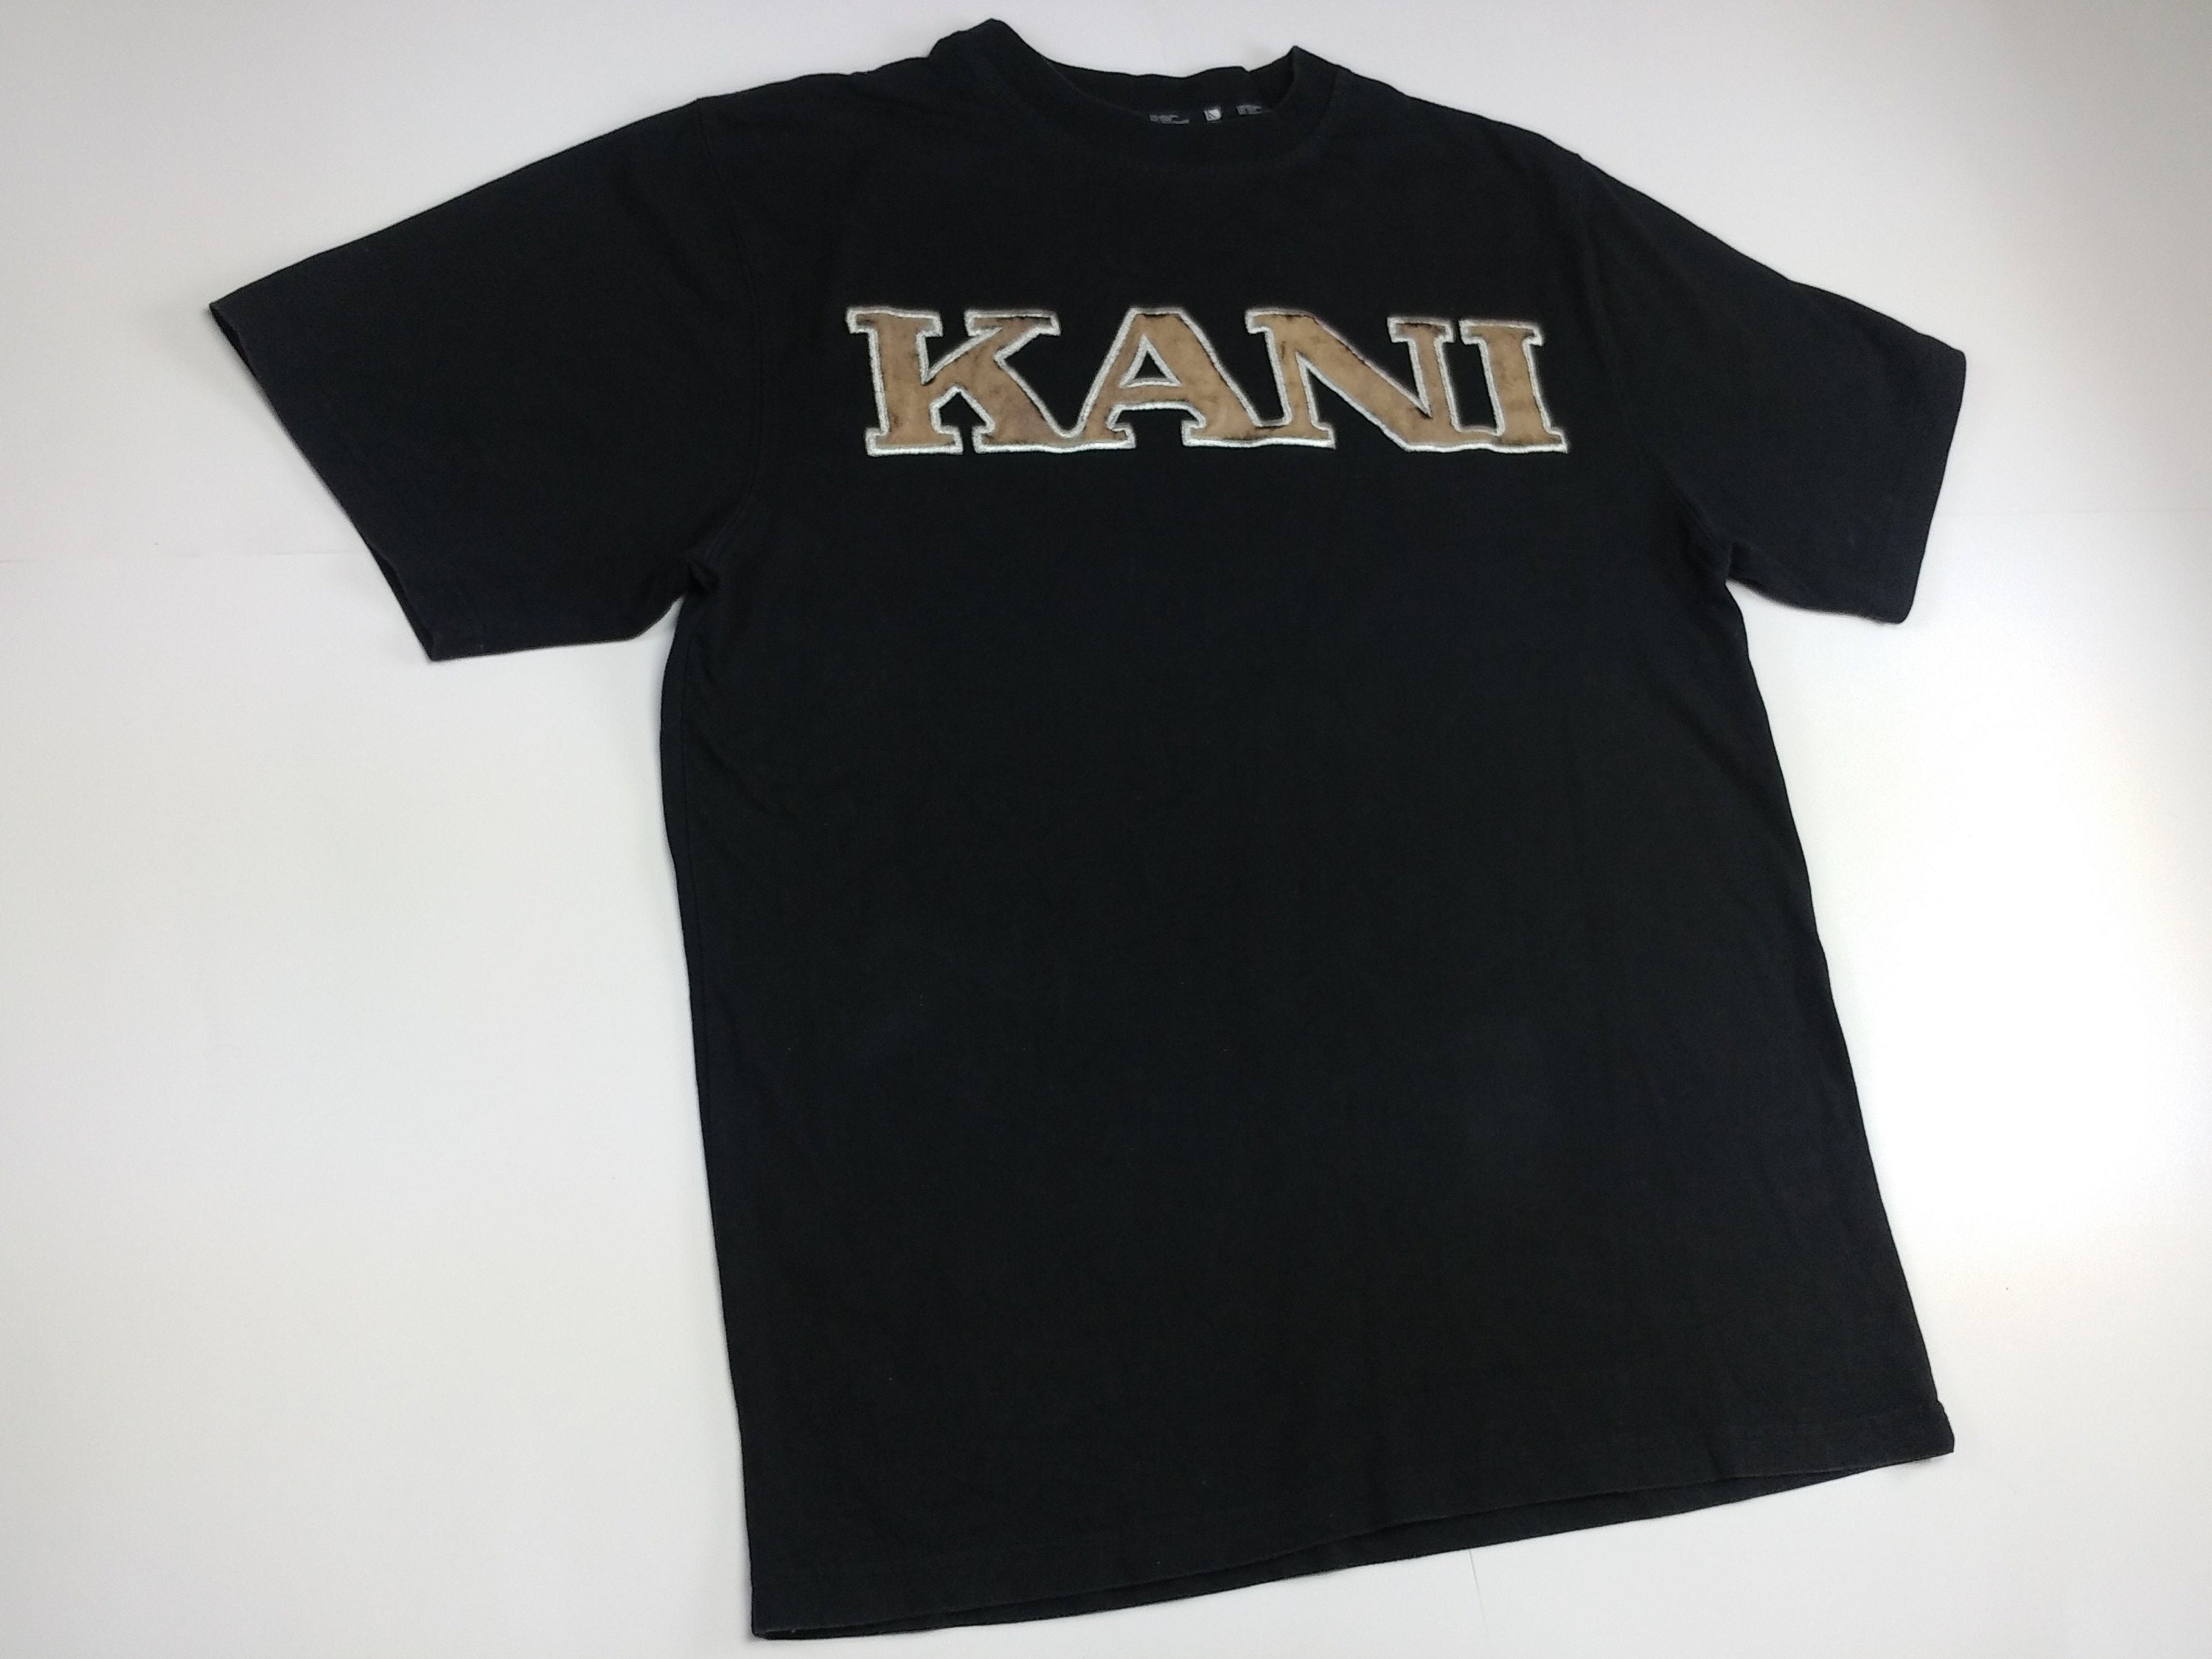 KARL KANI Jersey Black Vintage Hip Hop T-shirt 90s Hip Hop - Etsy